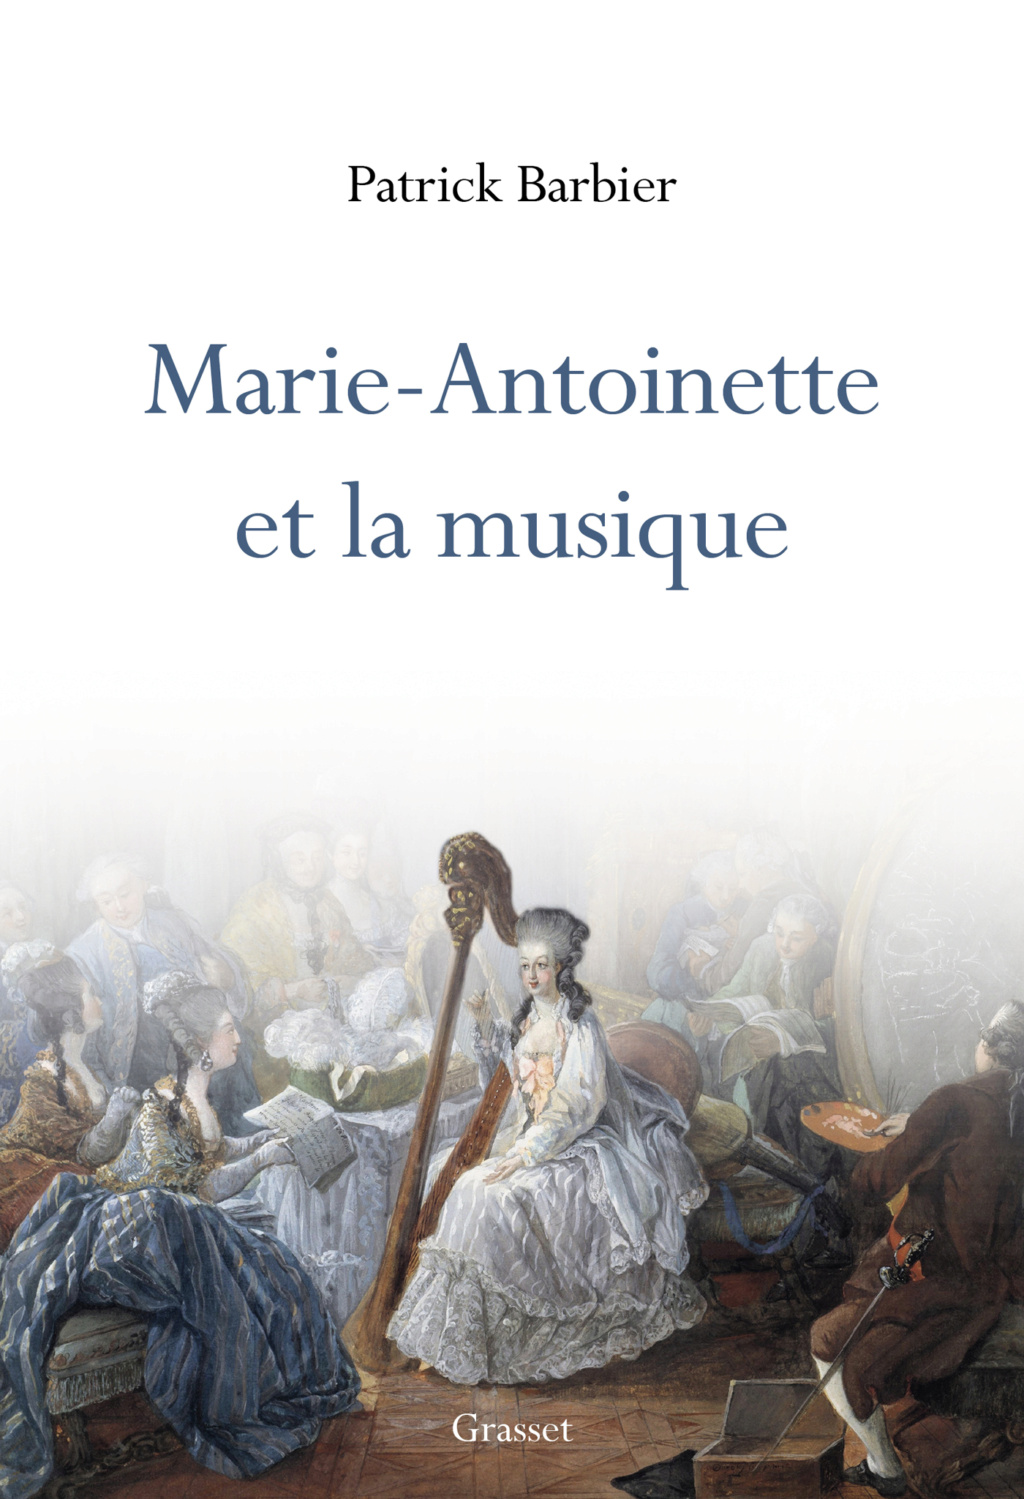 barbier - Marie-Antoinette et la musique, de Patrick Barbier (Grasset, 2022) Cover10